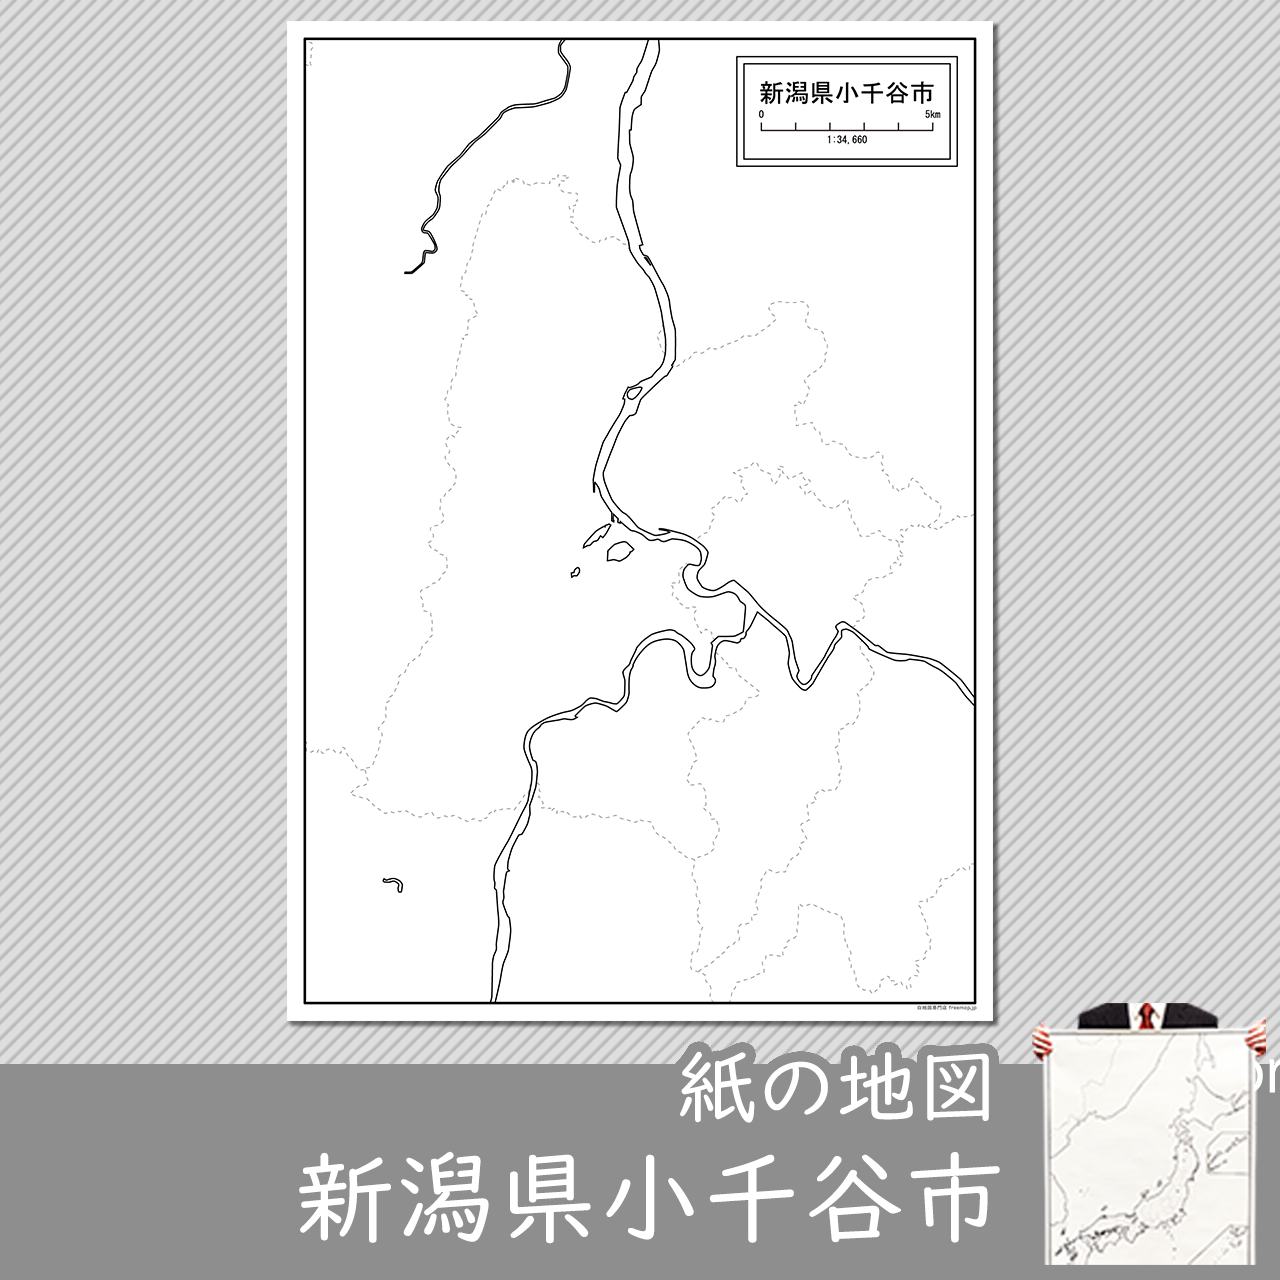 小千谷市の紙の白地図のサムネイル